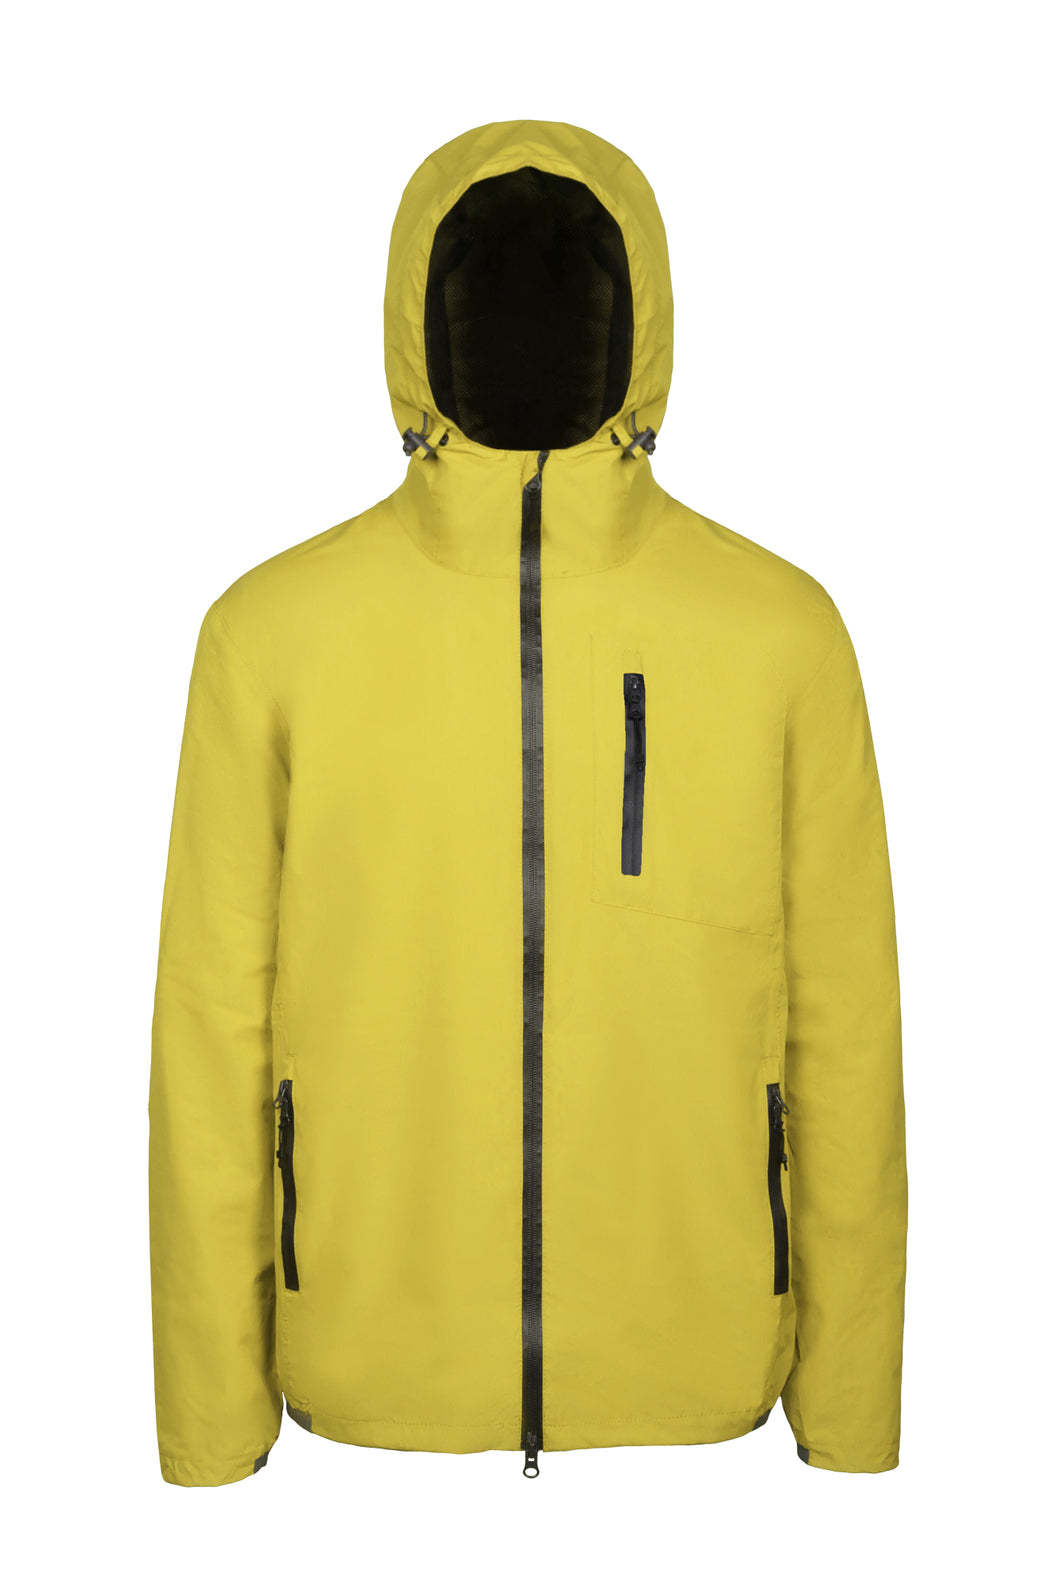 RainForce jacket, regenjack van Scippis, in geel